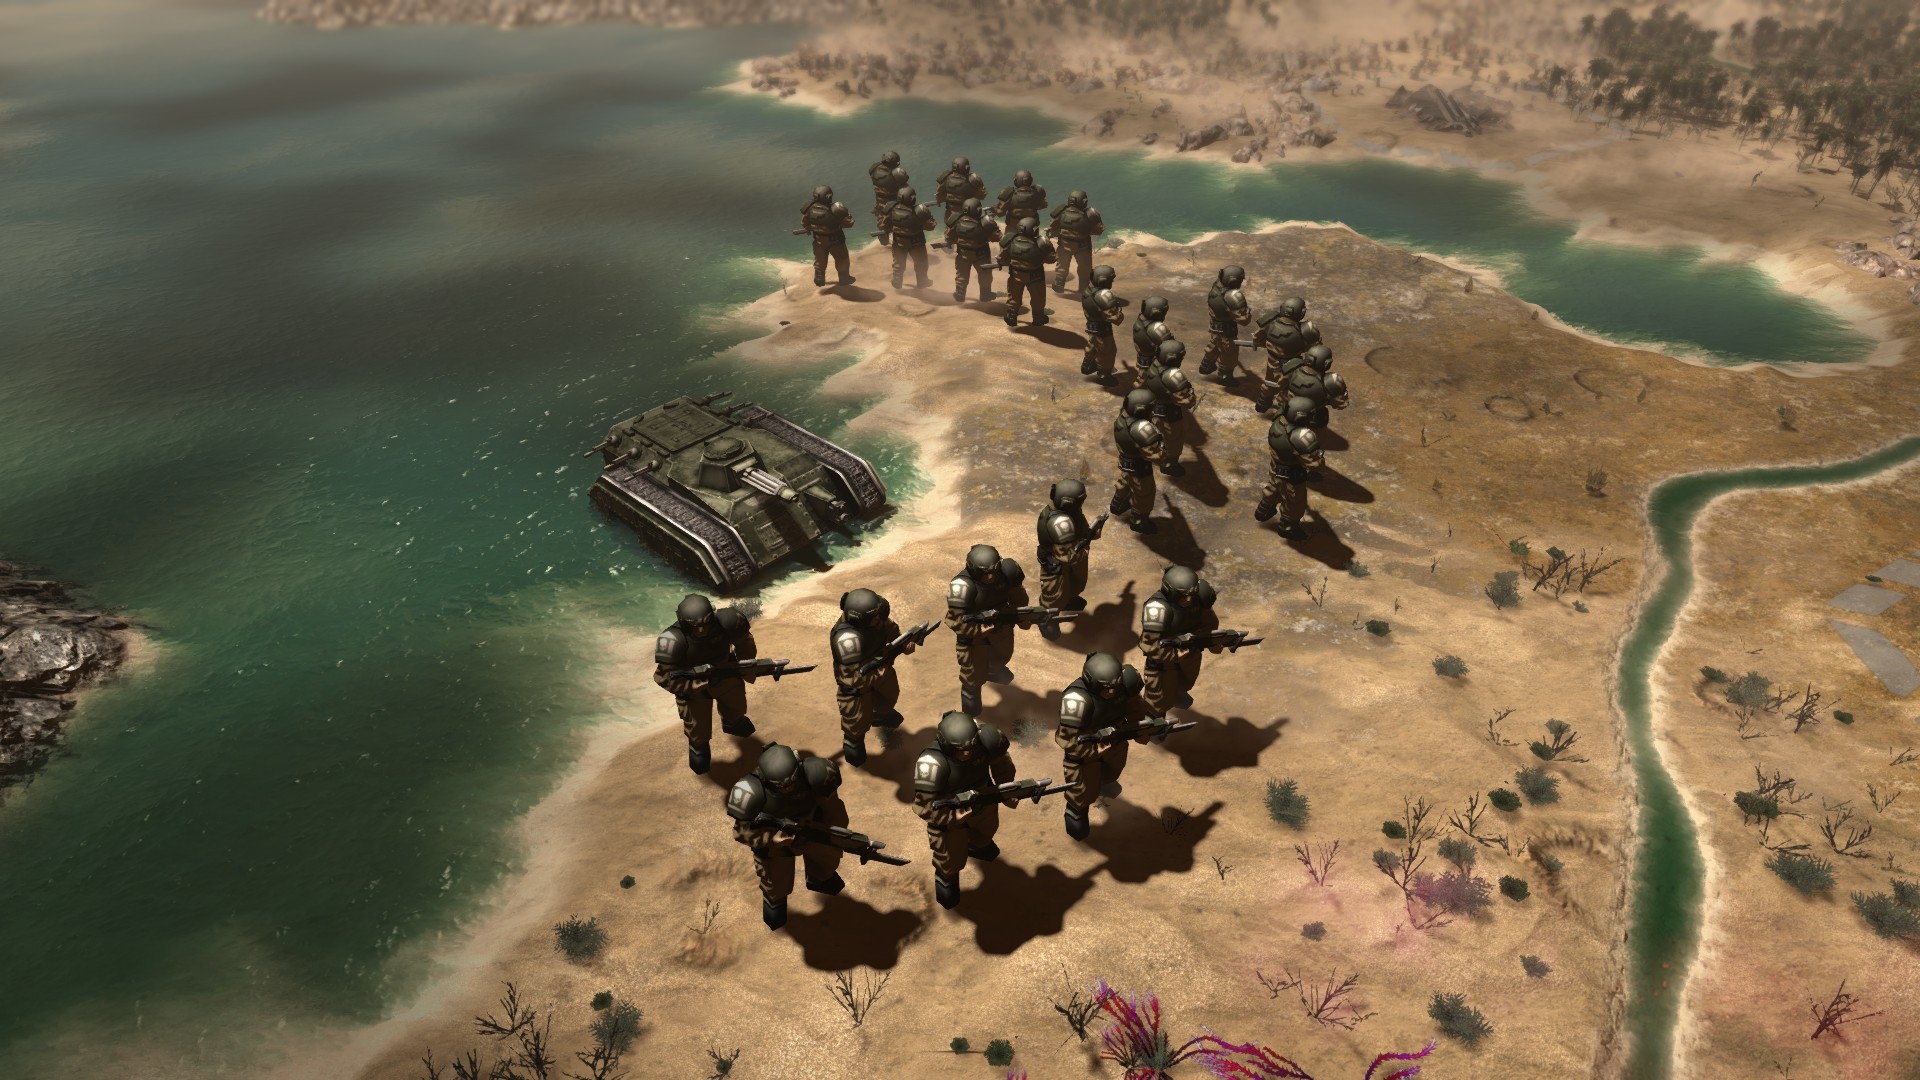 Warhammer 40,000: Gladius - Assault Pack on Steam